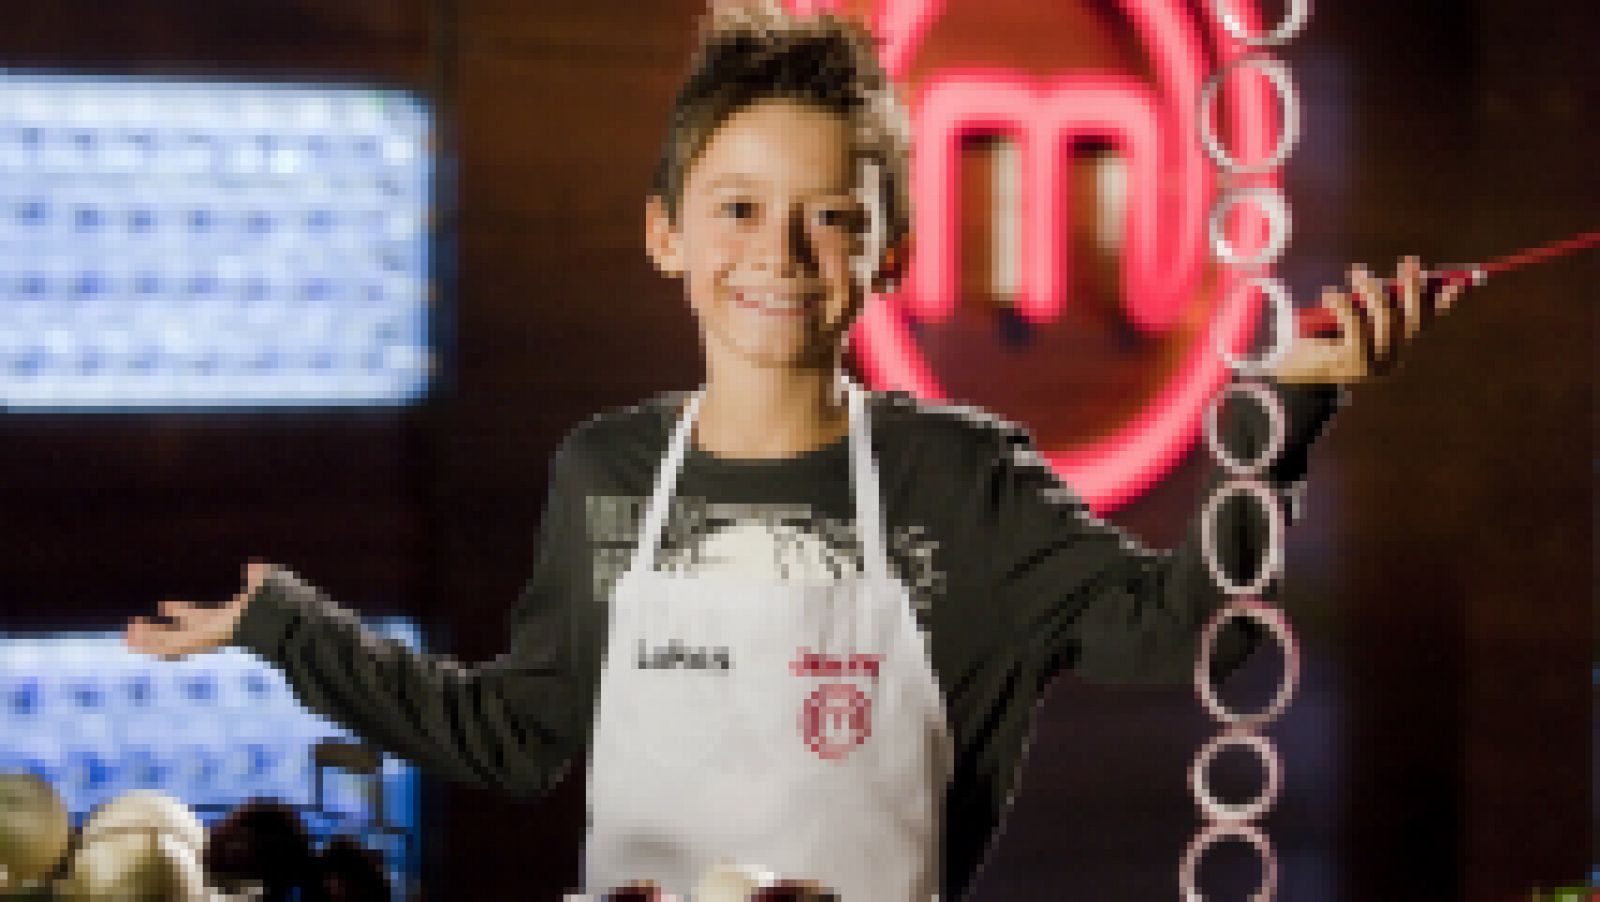 Concursante de MasterChef Junior 3 - Lukas, 10 años. Barcelona